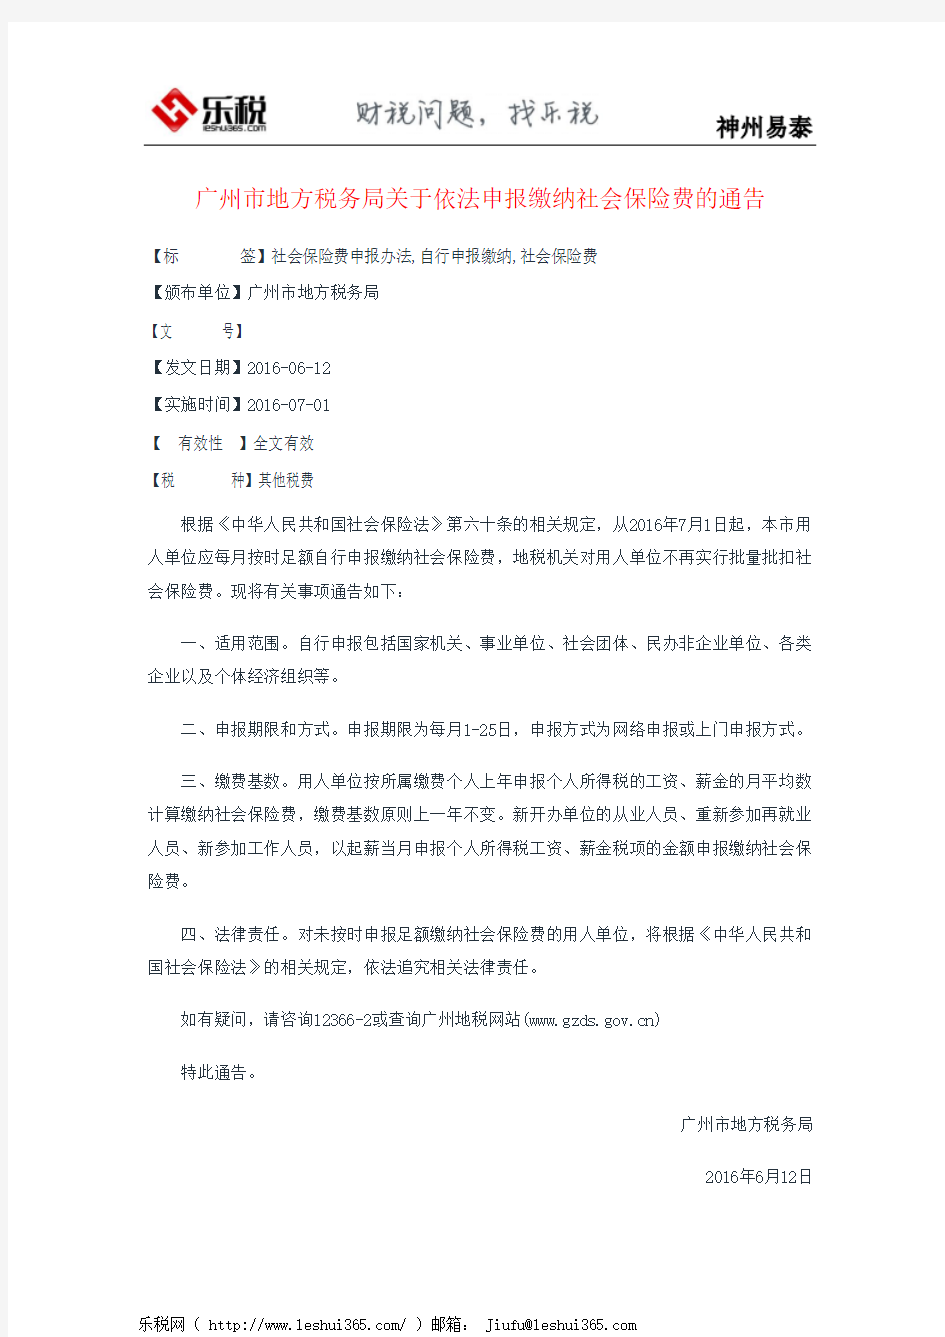 广州市地方税务局关于依法申报缴纳社会保险费的通告